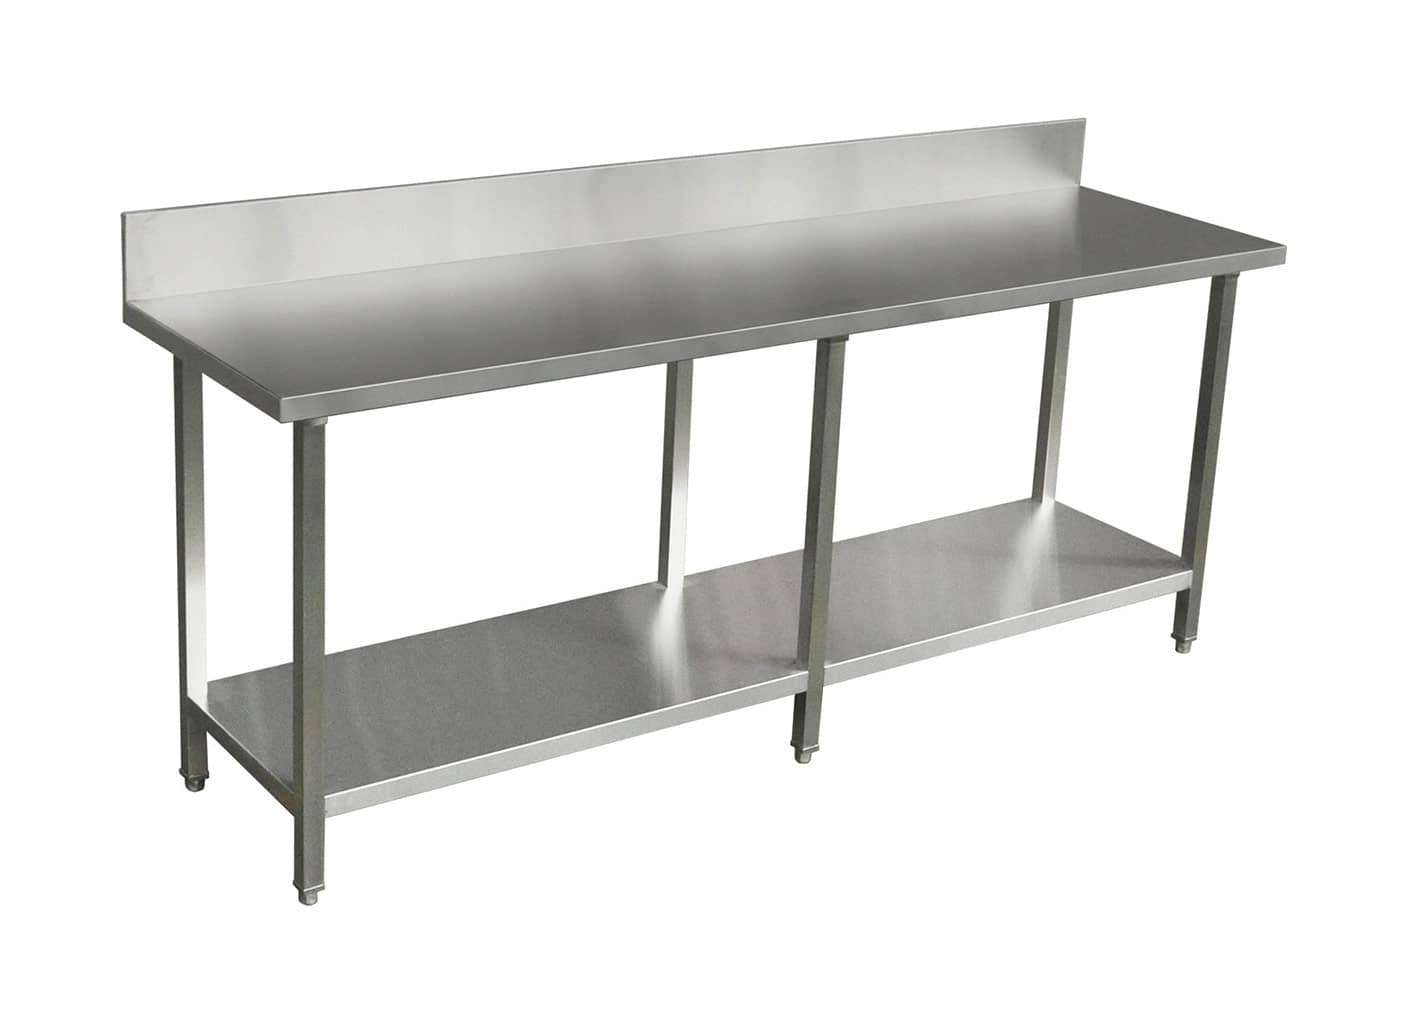 Commercial Grade Stainless Steel Splashback Bench, Premium Range 2200 X 610 X 900mm high